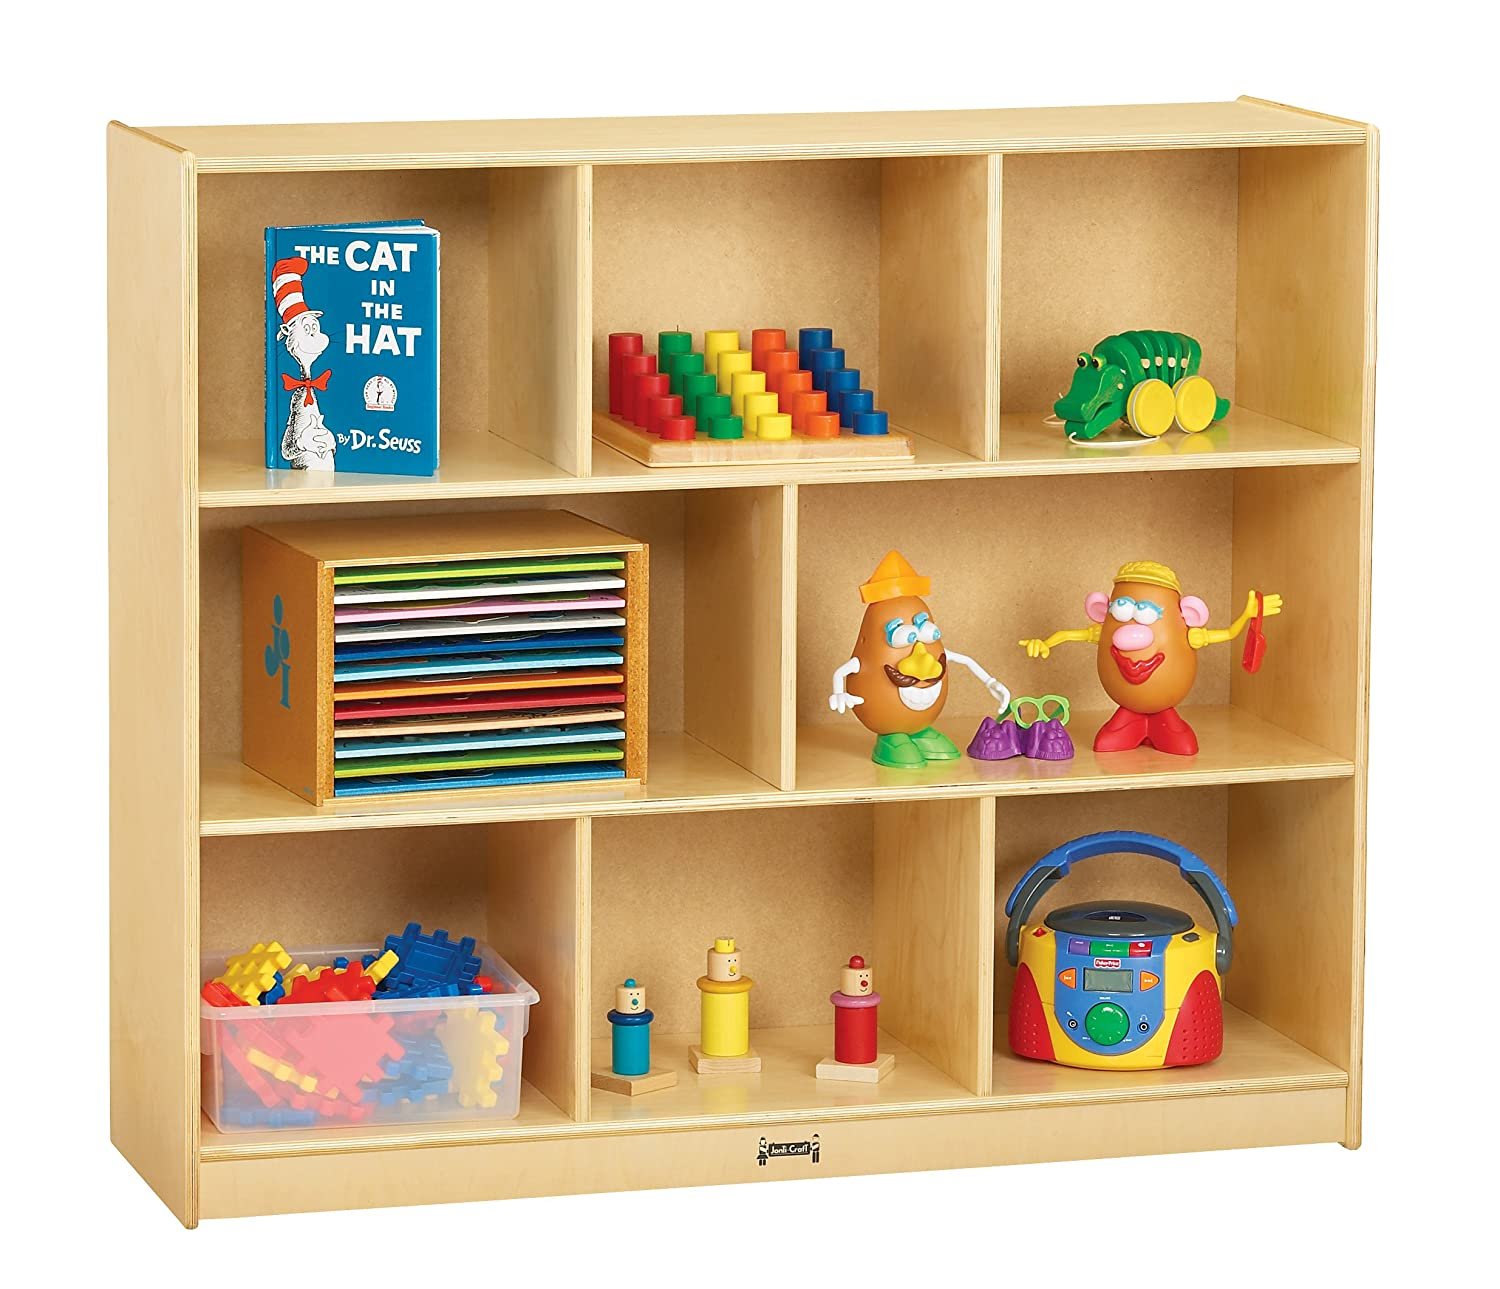 Мебель для книг и игрушек